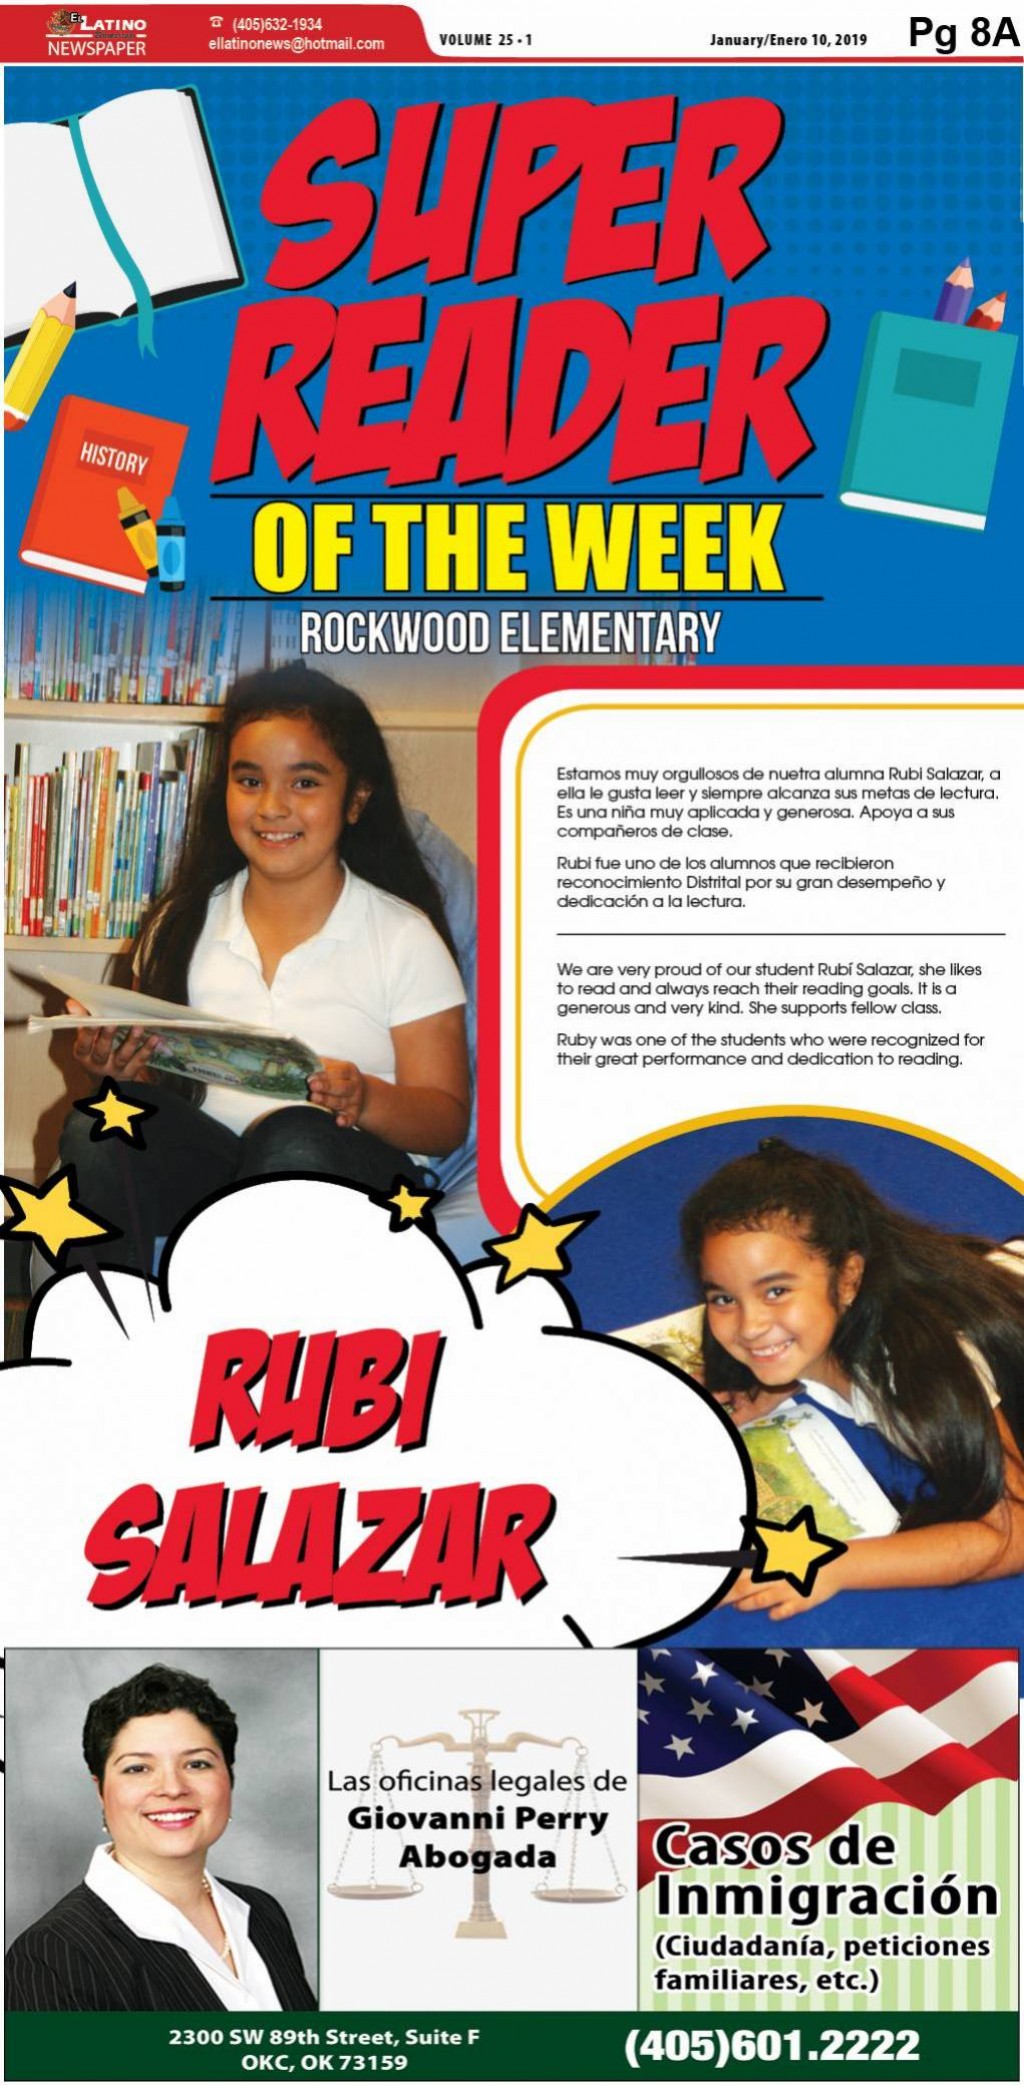 Super Reader of the Week: Rubi Salazar